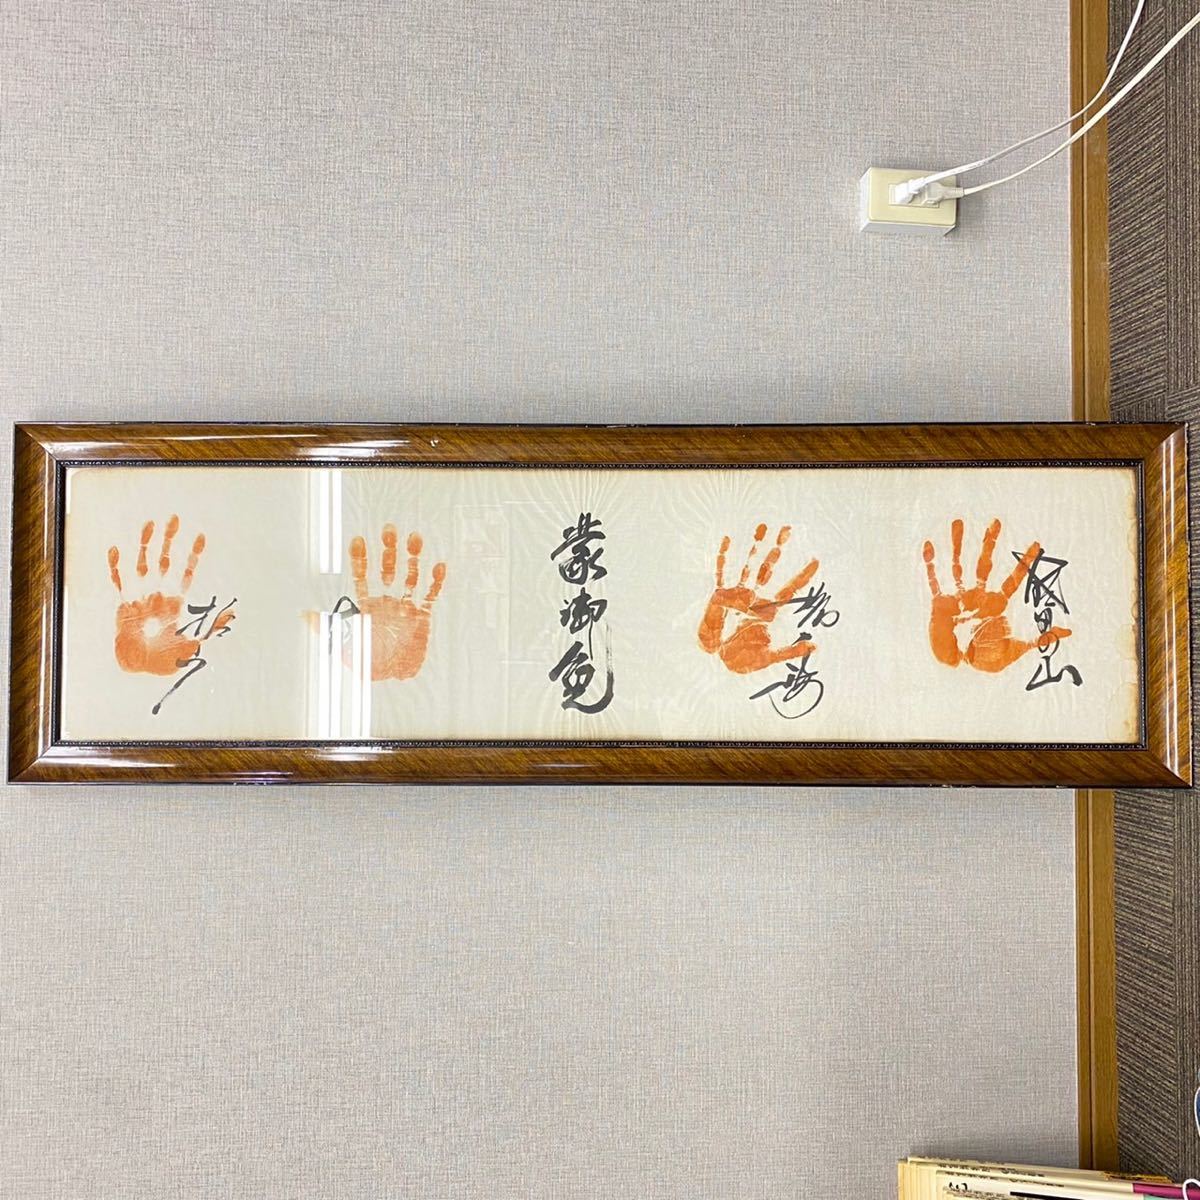 力士 相撲 手形 書 有名 飾り オブジェ 【管理番号12石】